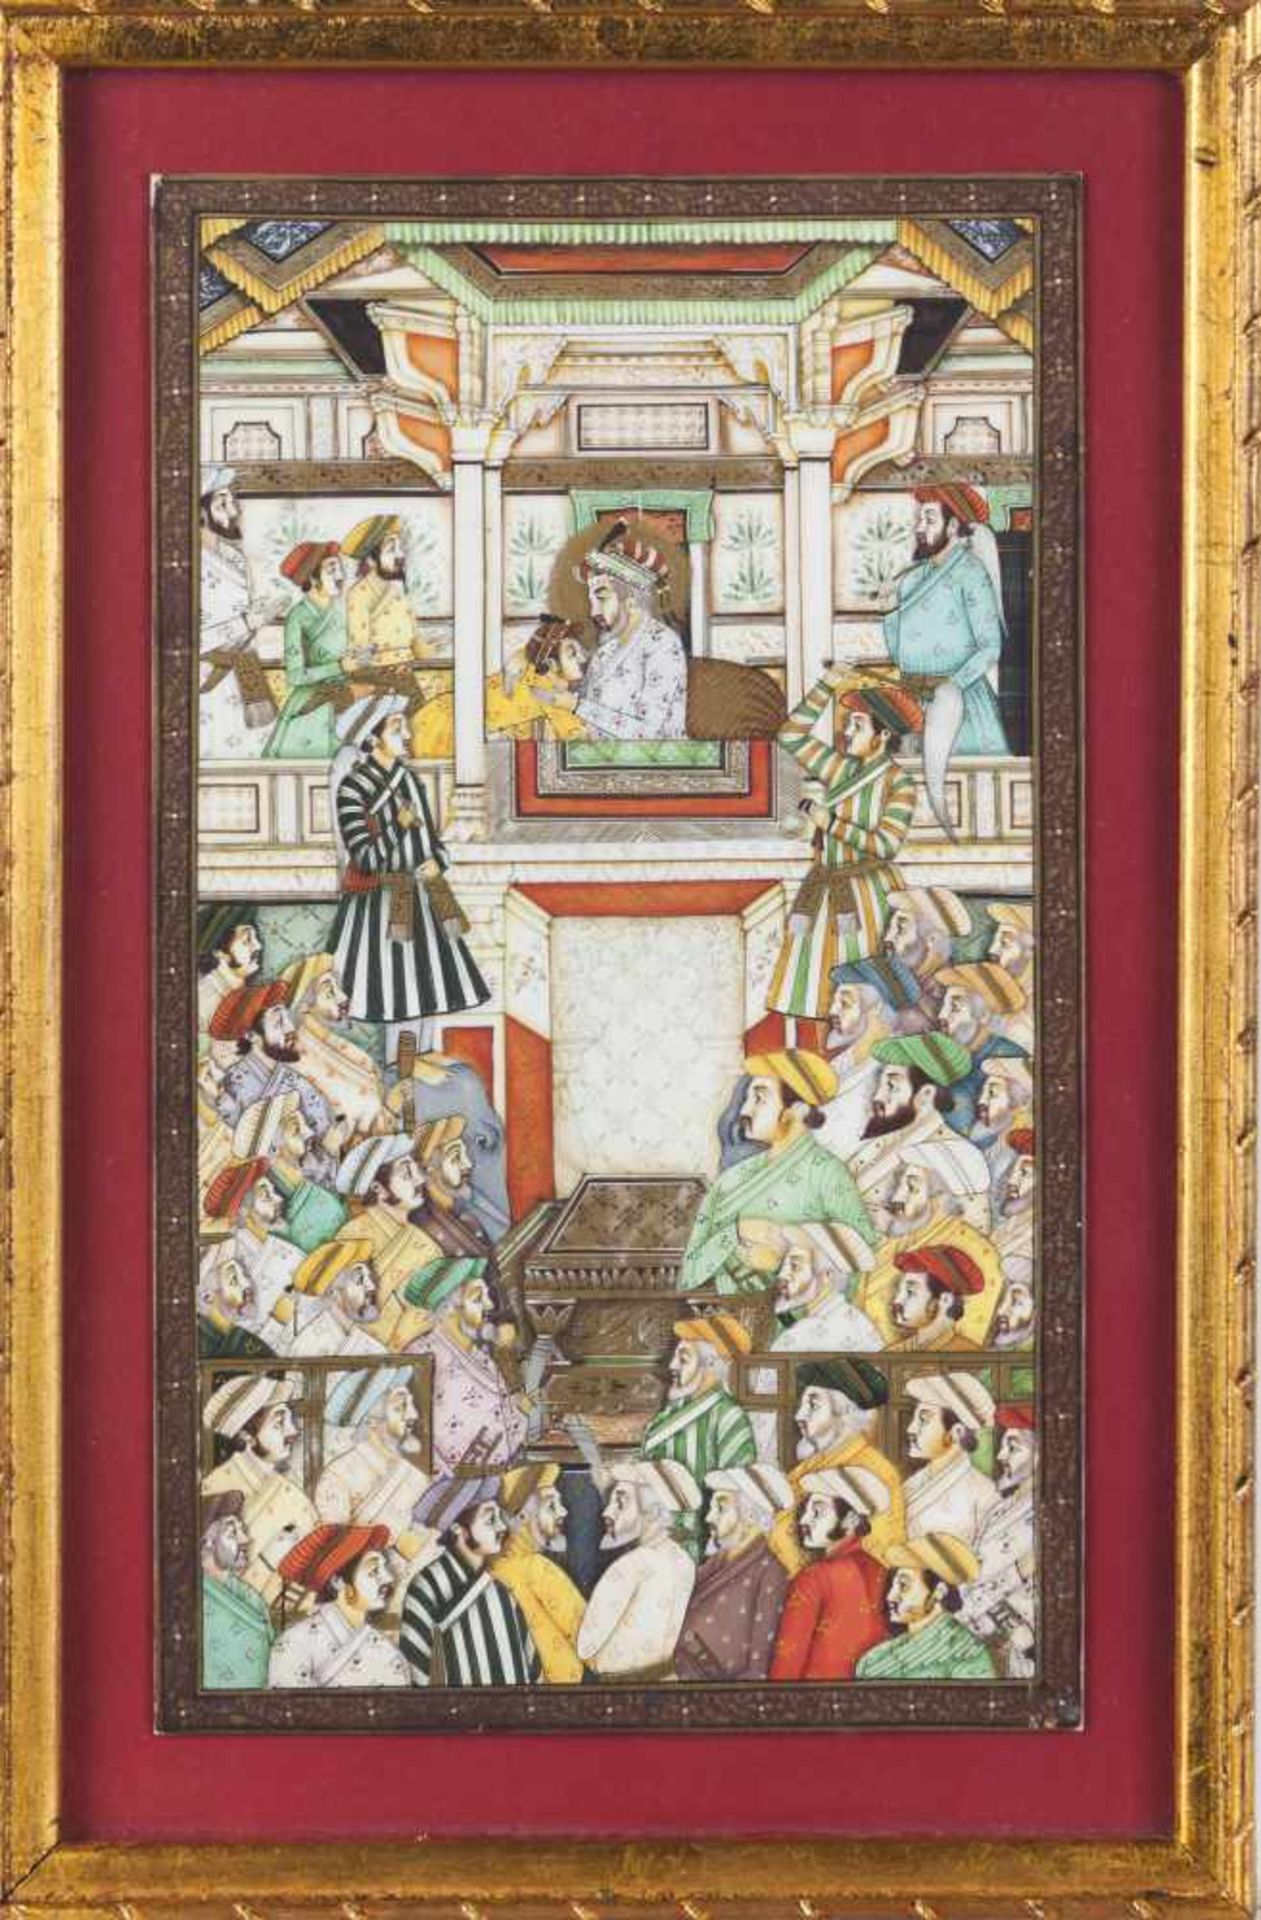 Durbar of Shah Jahan scenesPair of paintings on ivoryDurbar of Shah Jahan (1592-1666) scenesIndia,